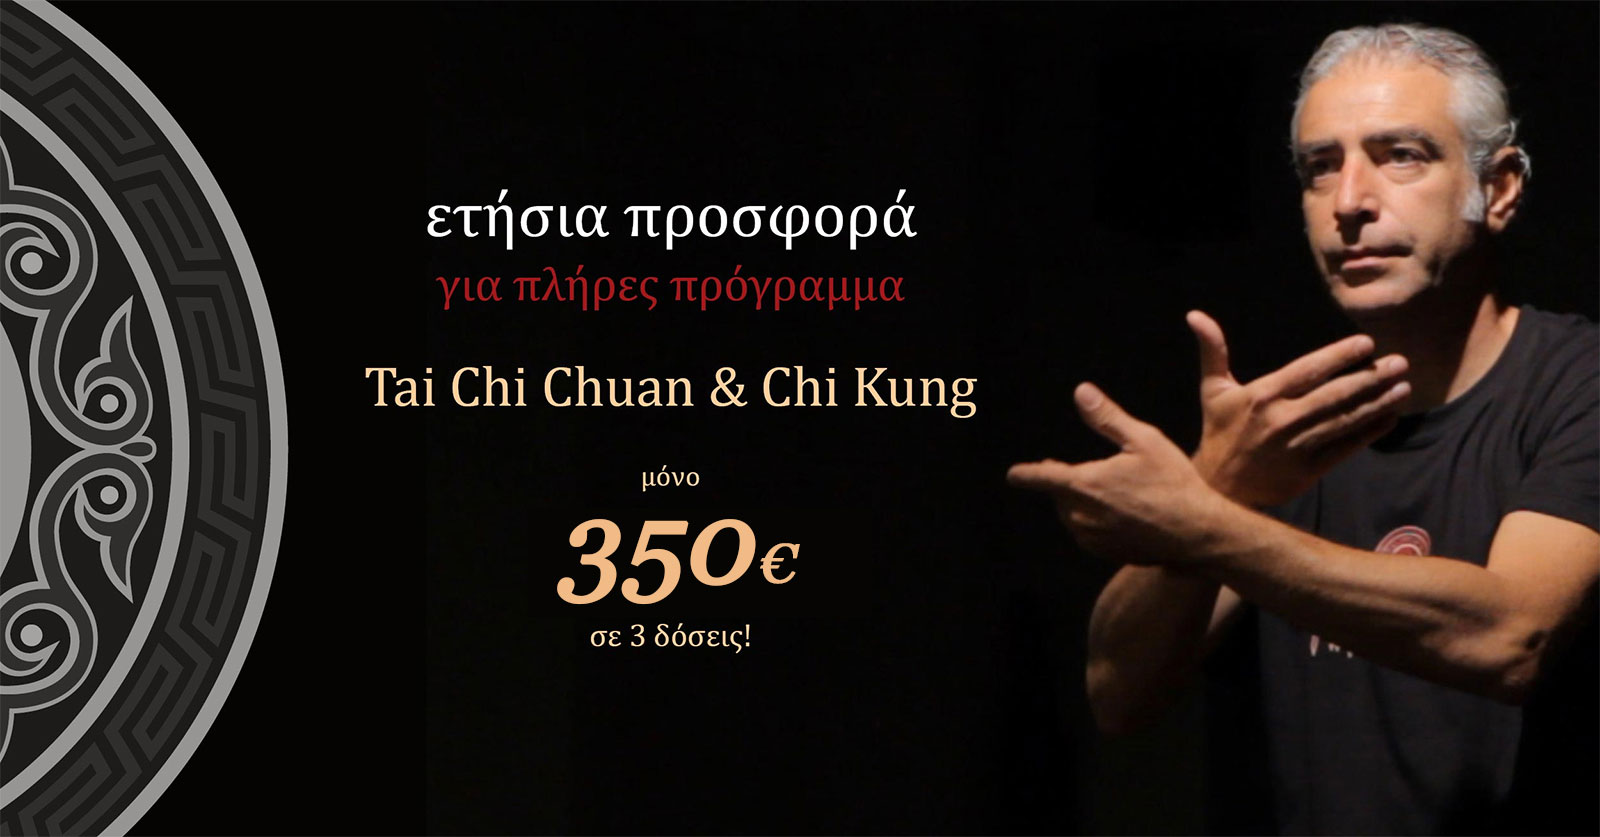 Κόστος για 3 μαθήματα την εβδομάδα (Τάι Τσι Τσουάν & Τσι Κονγκ) / 45€ μηνιαίως.